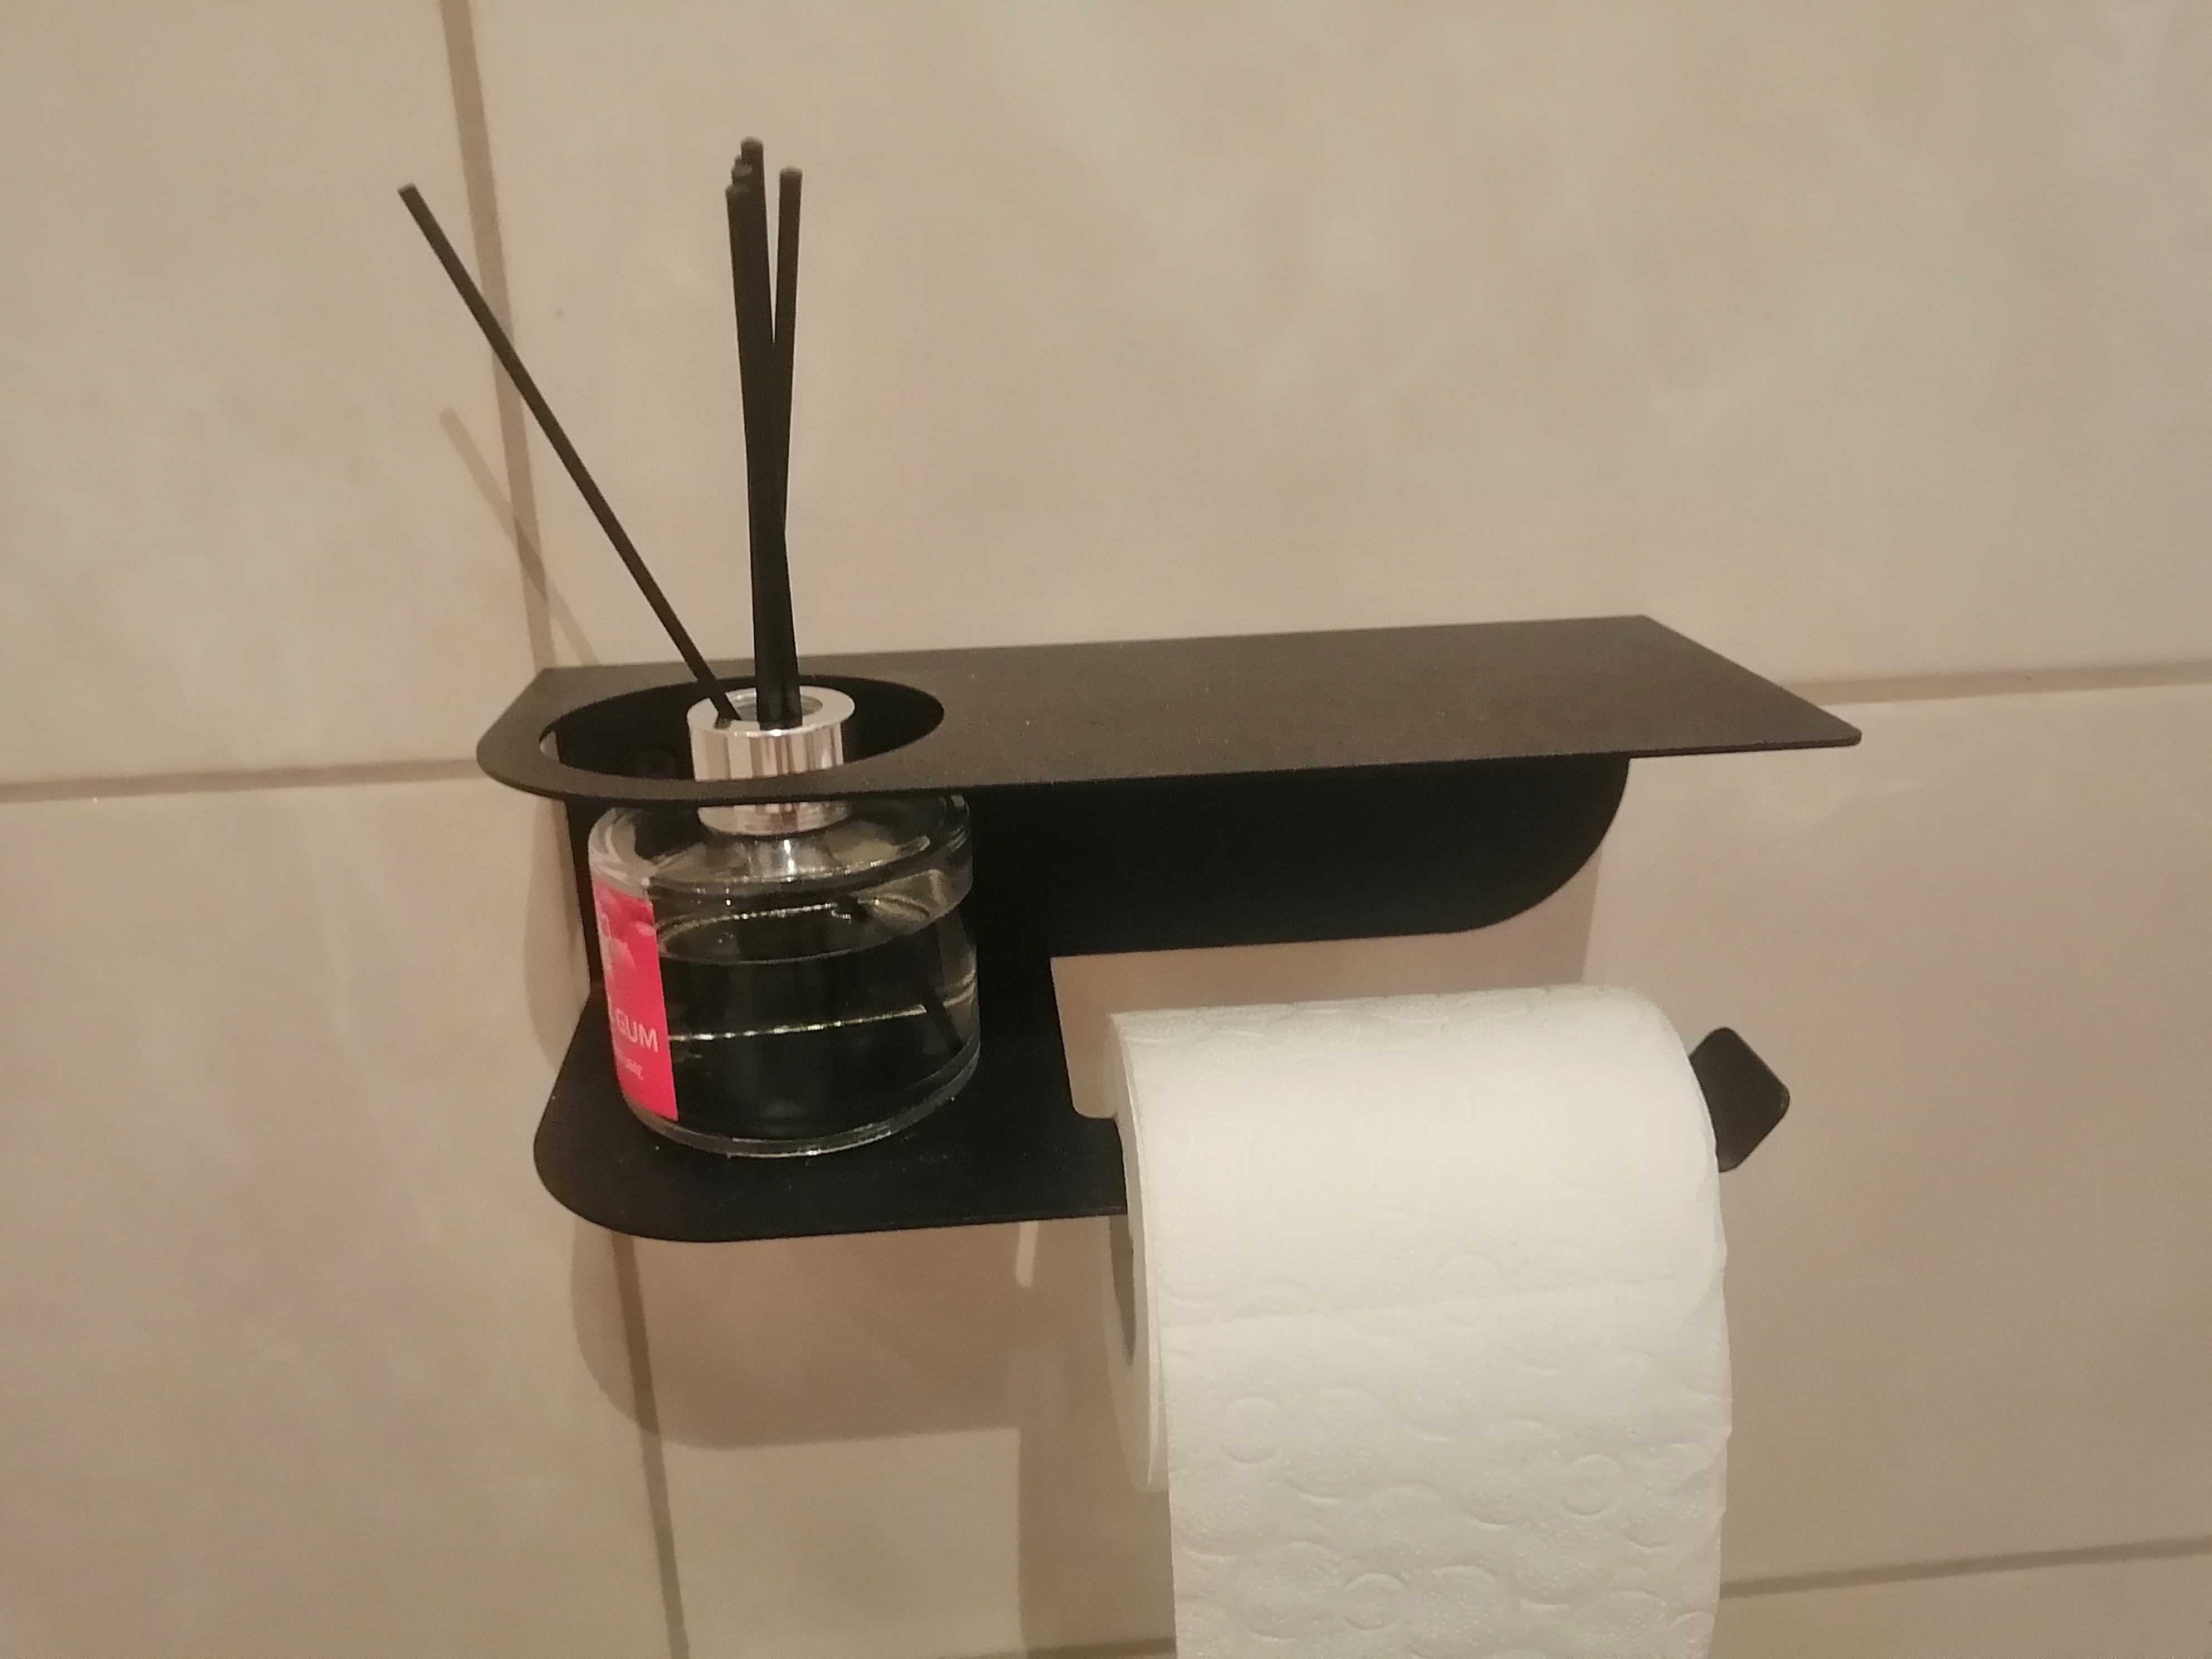 10 способов сделать держатель для туалетной бумаги своими руками